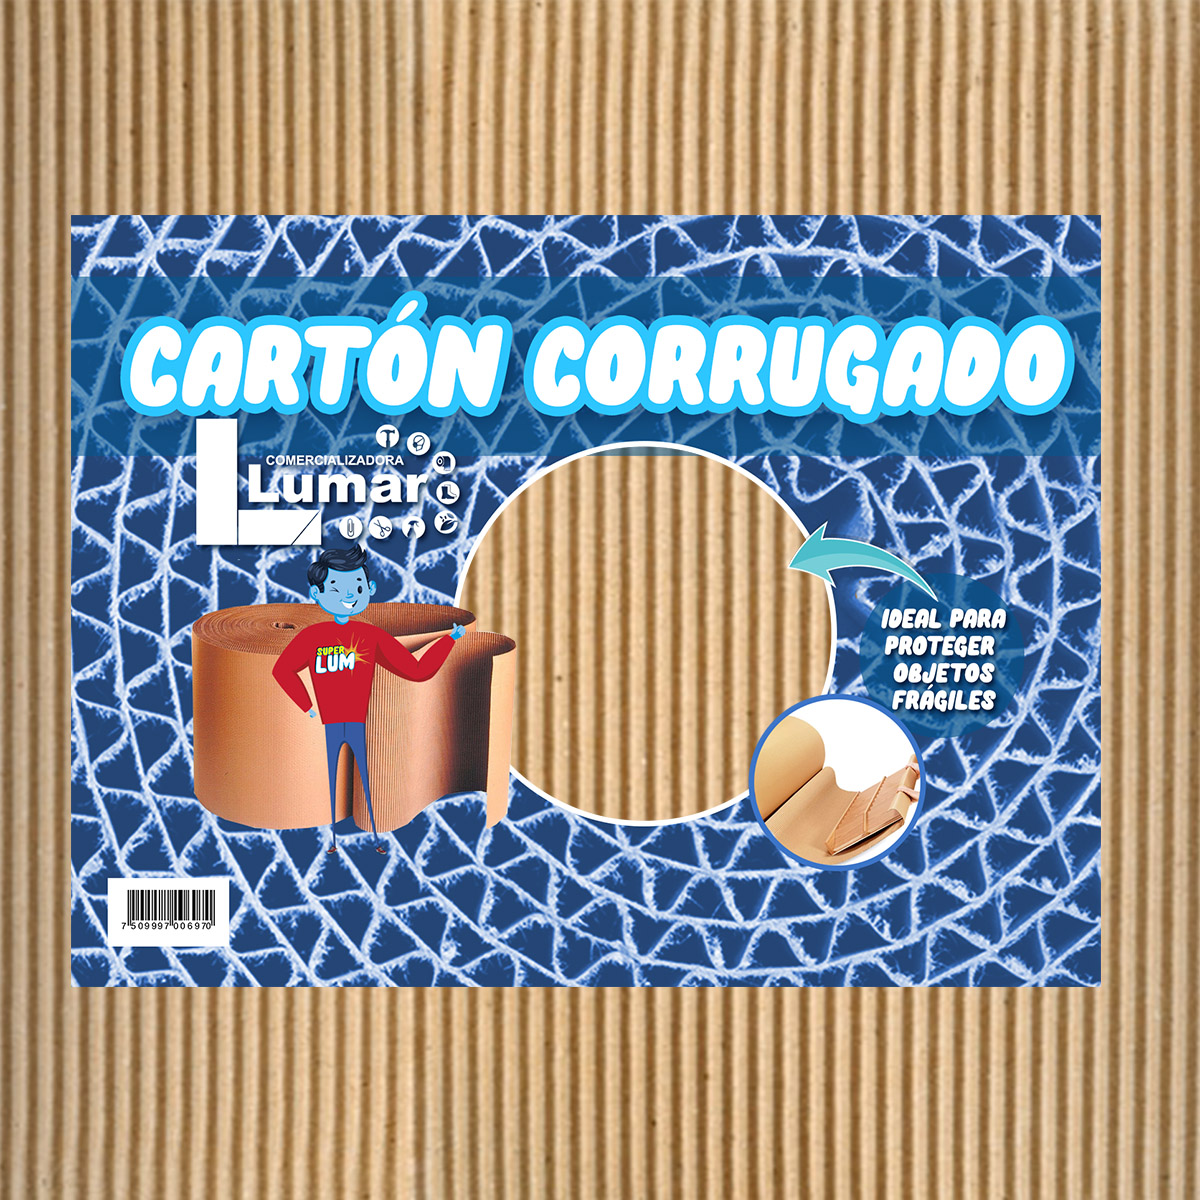 CARTON CORRUGADO IMPORTADO 170X80 CM - Libreria y Arte Francisco